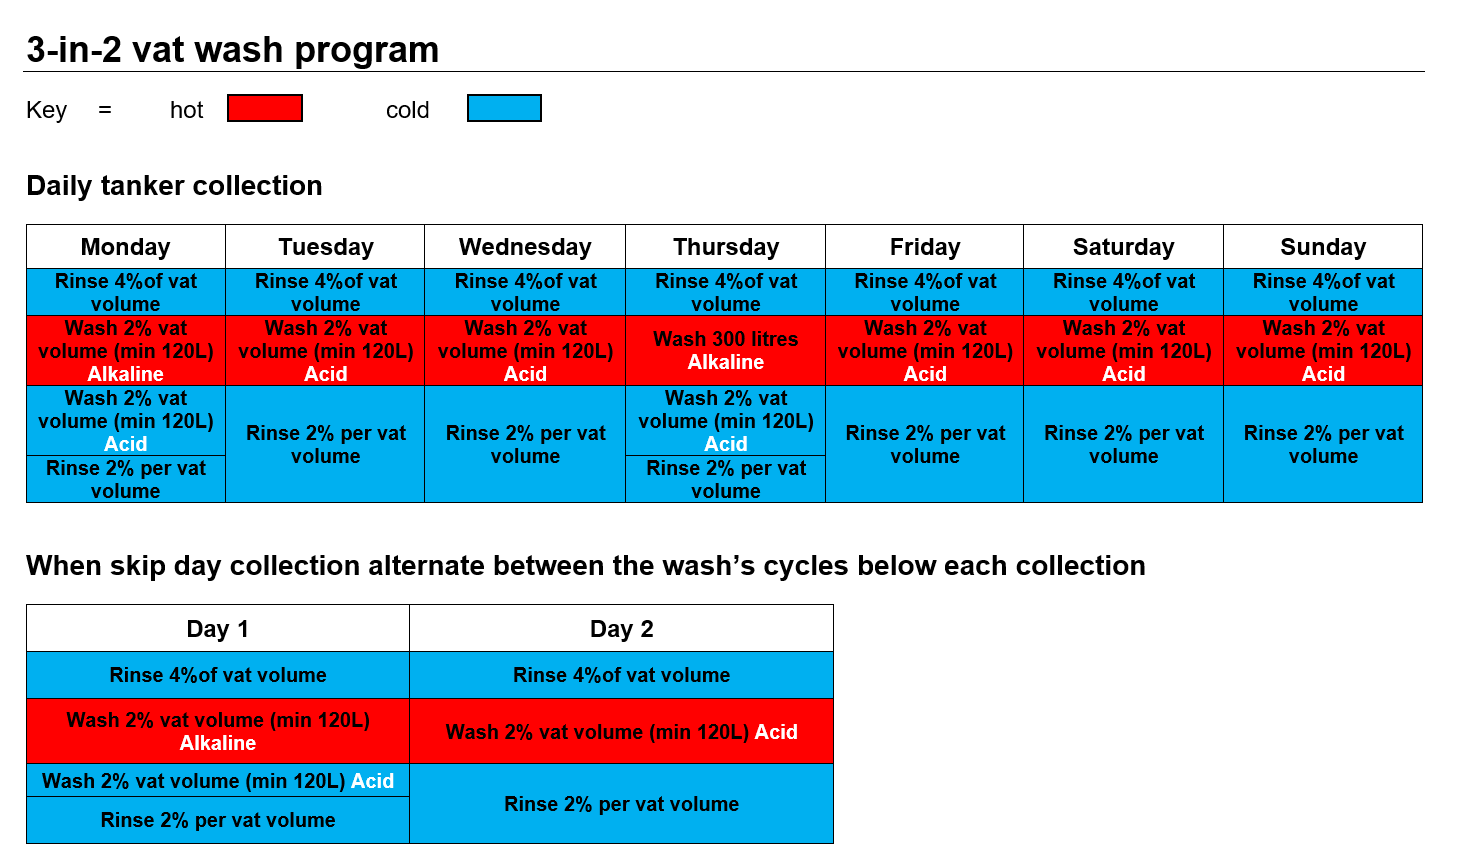 Example 3-in-2 vat wash program